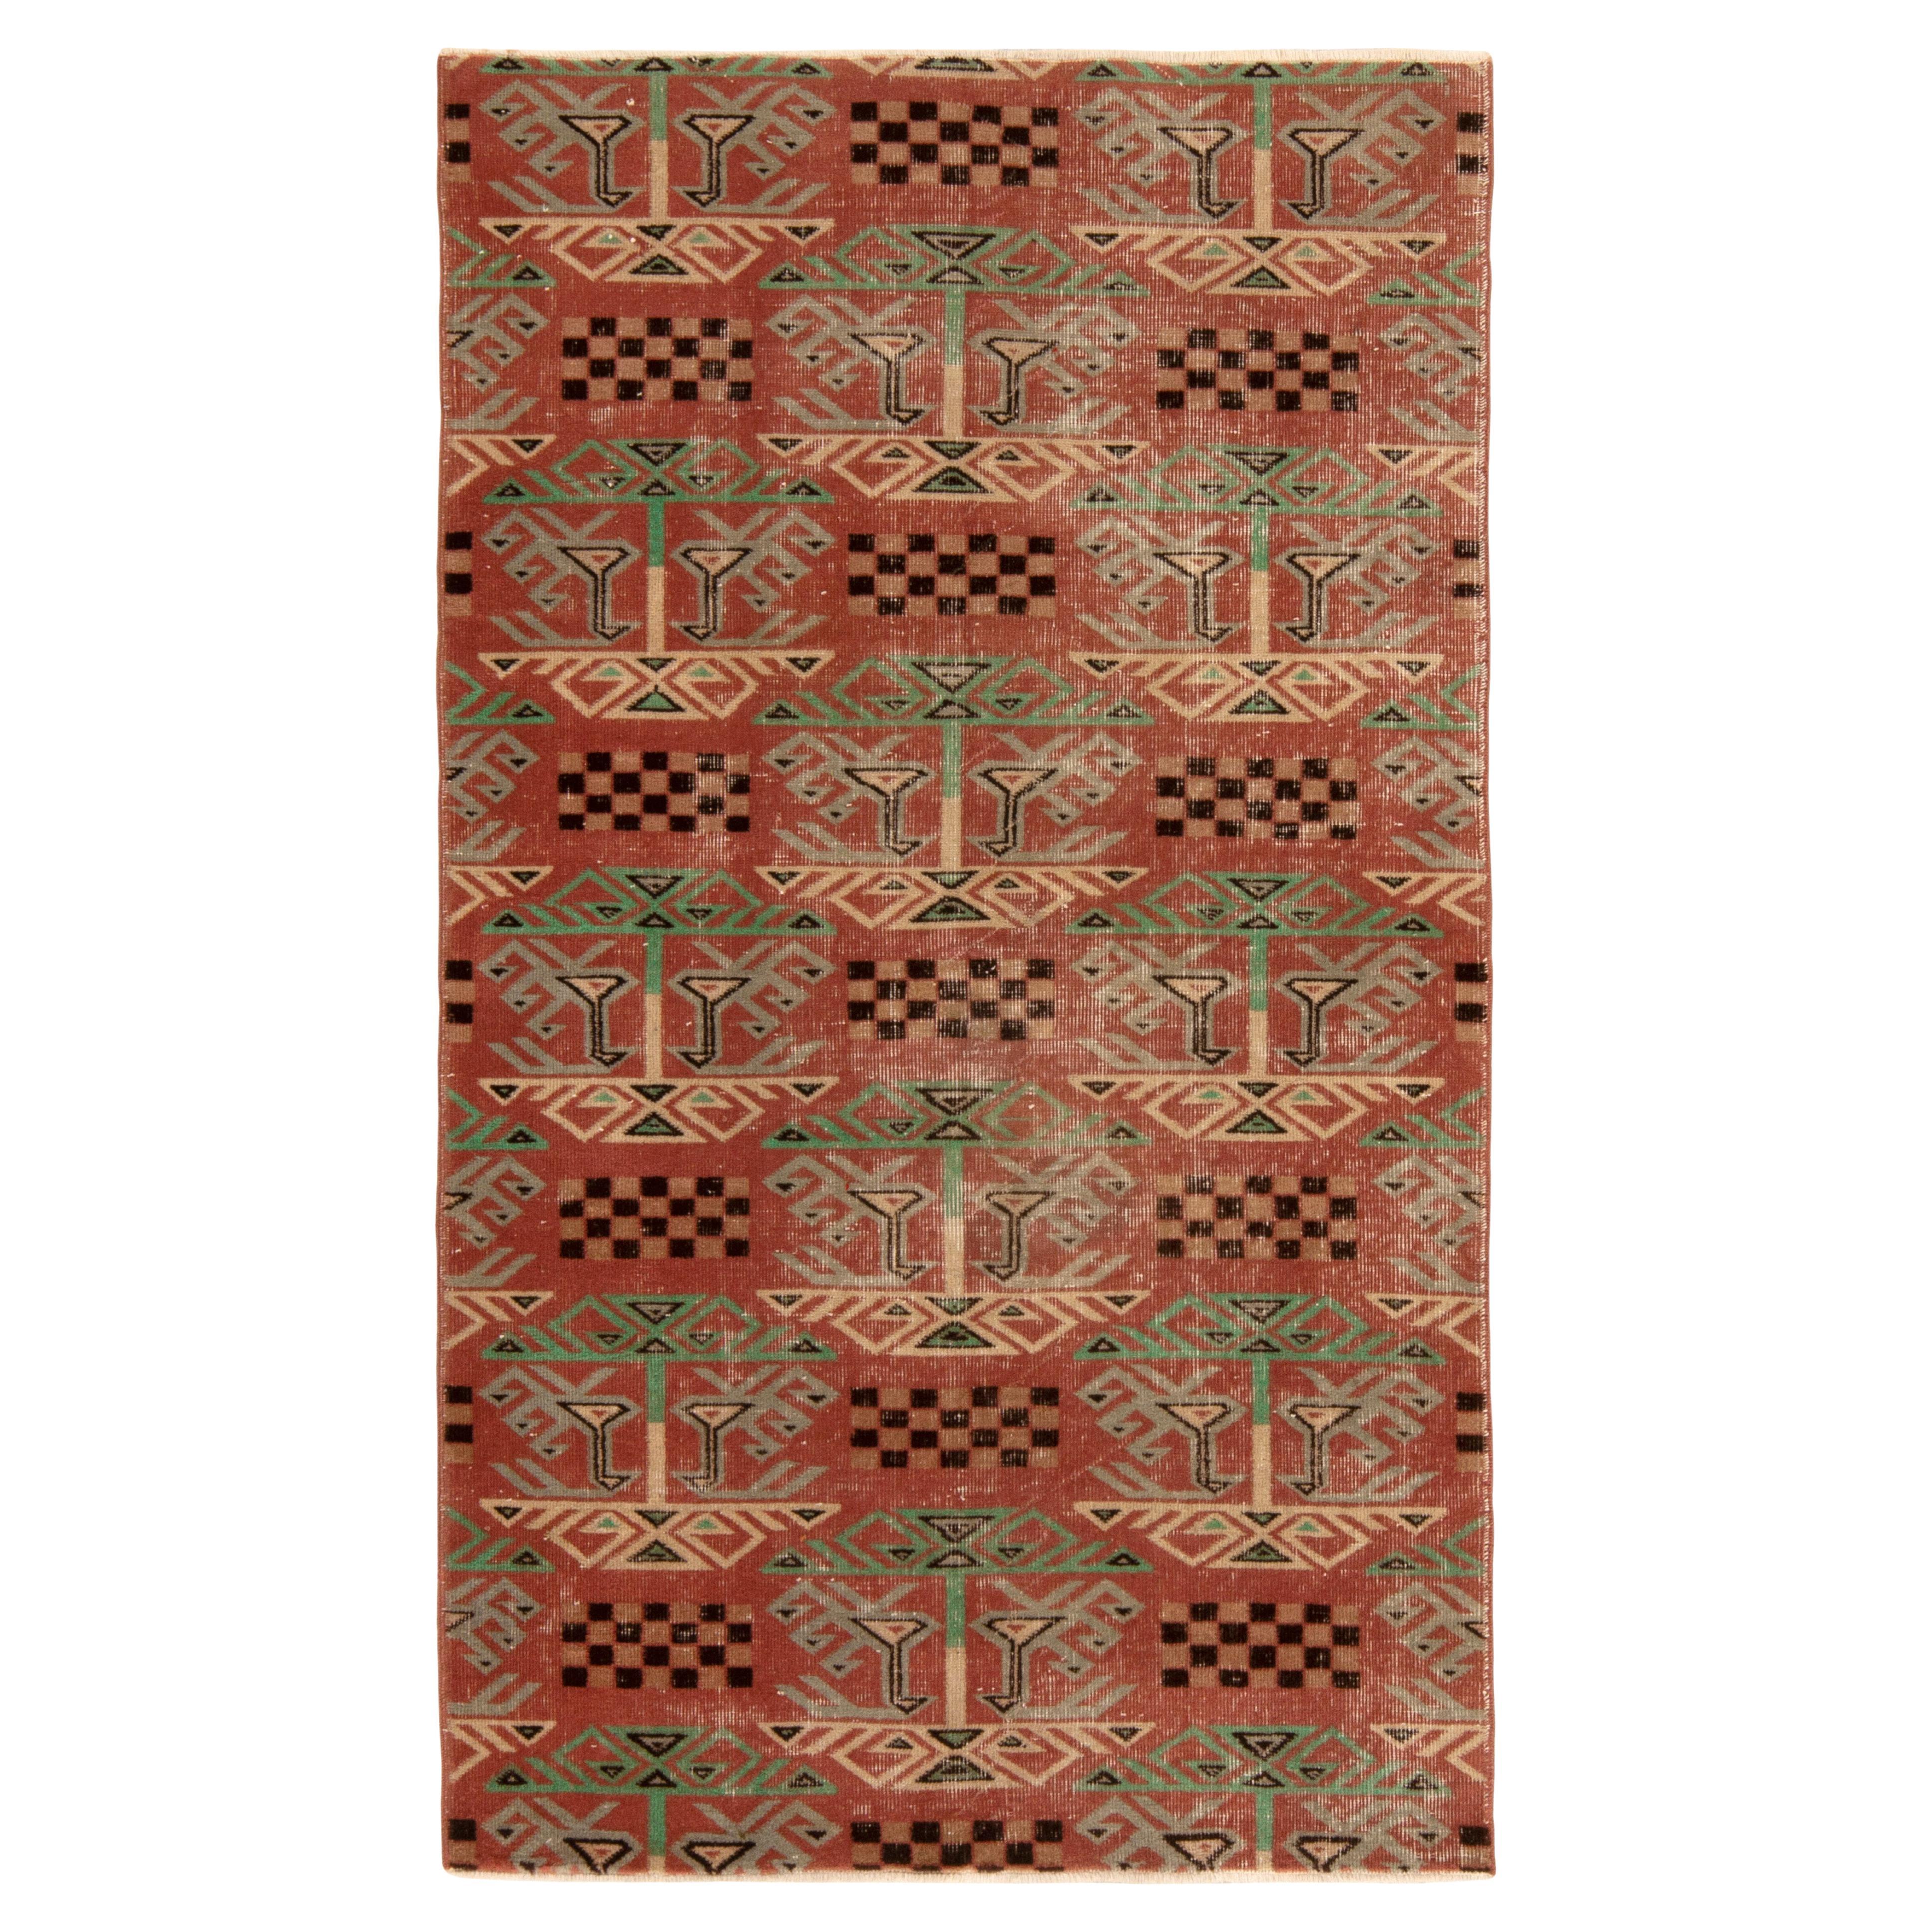 1960er Jahre Vintage Distressed Teppich in Rot, Grün, Art Deco Muster von Teppich & Kelim